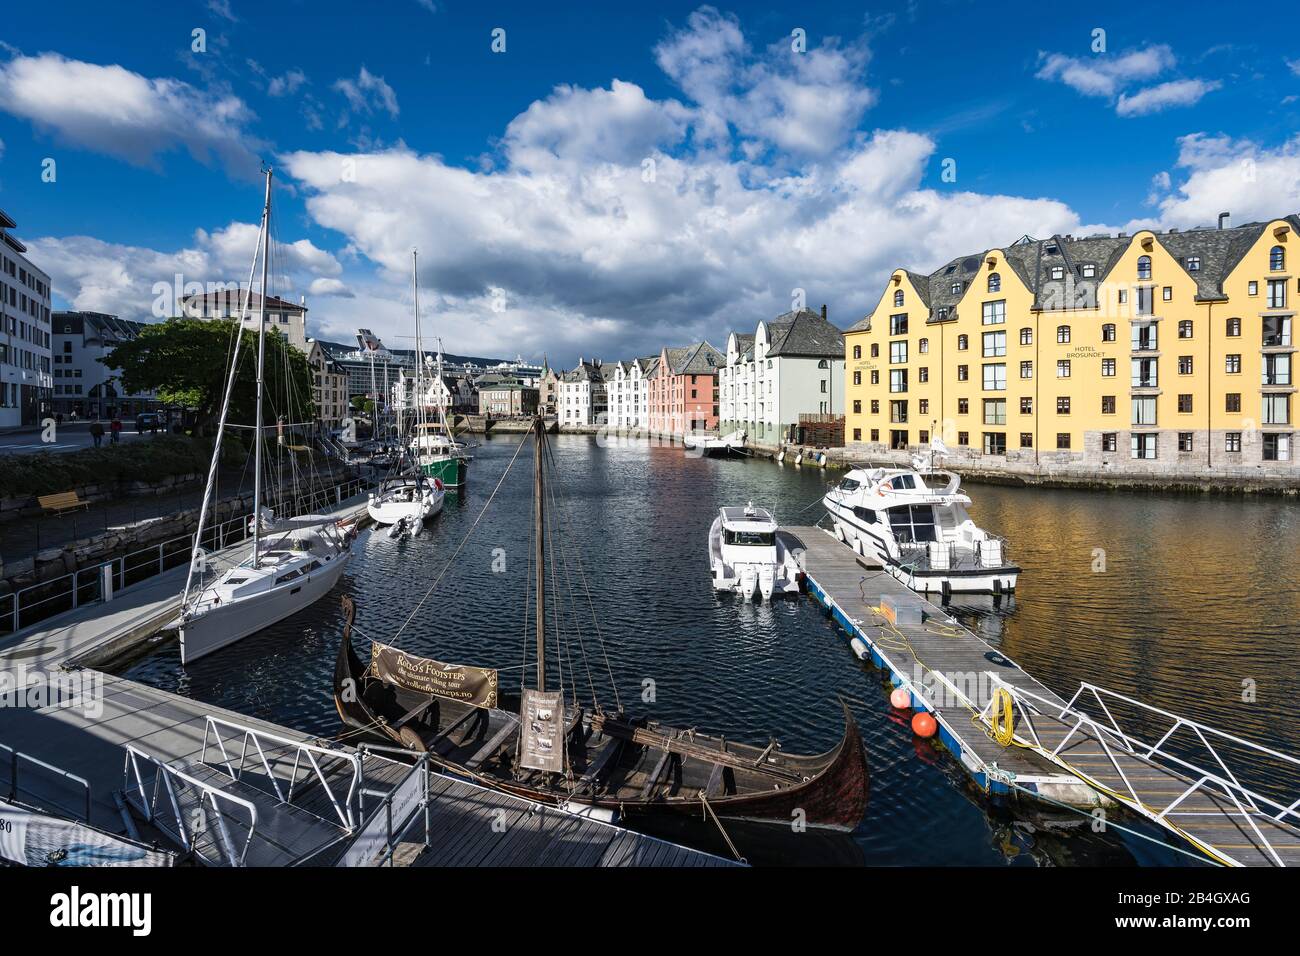 Jugendstilhäuser, historisches Boot, Ã…lesund, Ã…lesundet, Alesund, Norwegen, Skandinavien, Europa Stockfoto